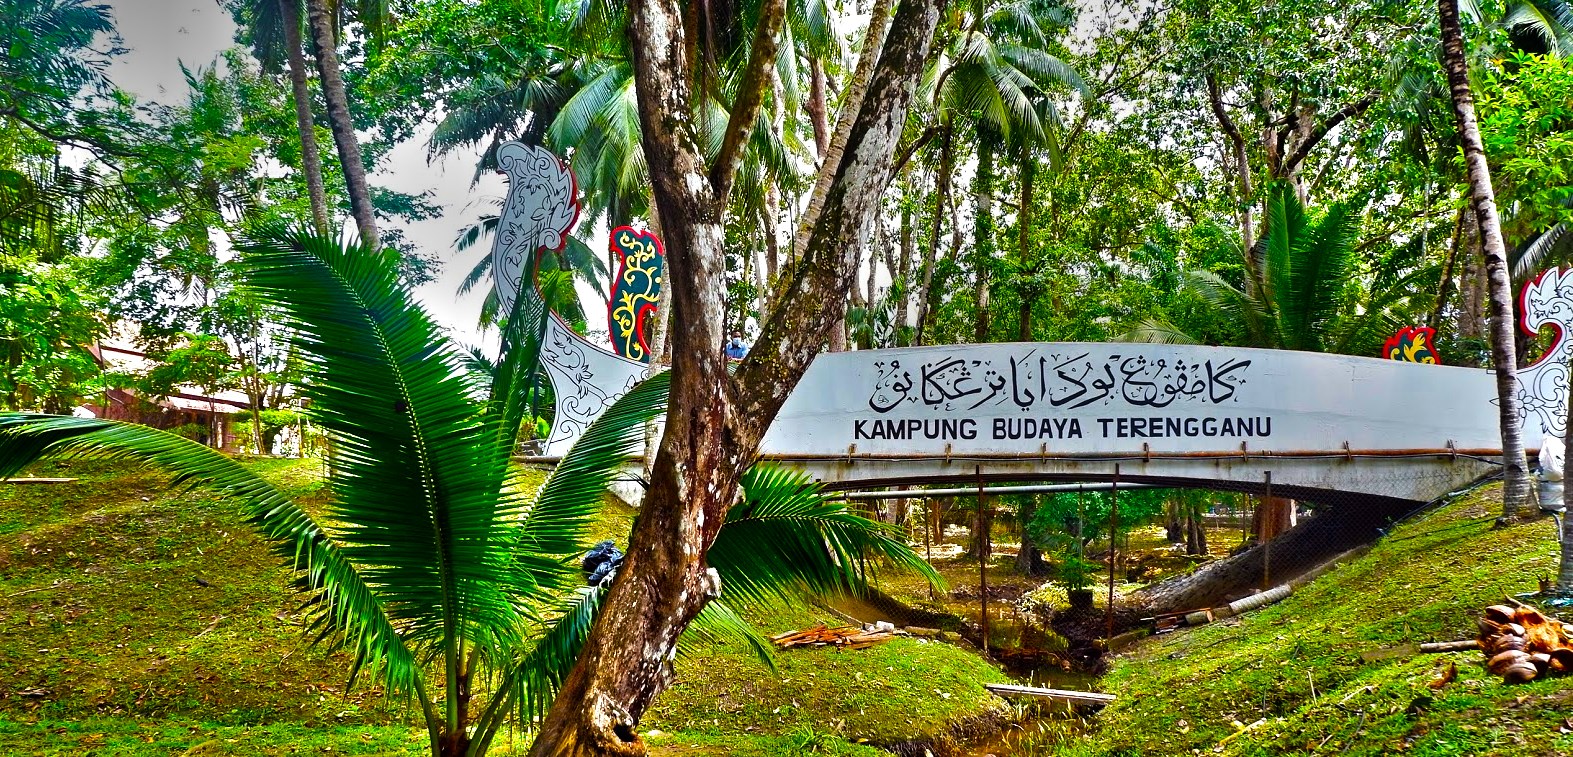 Kampung Budaya Terengganu